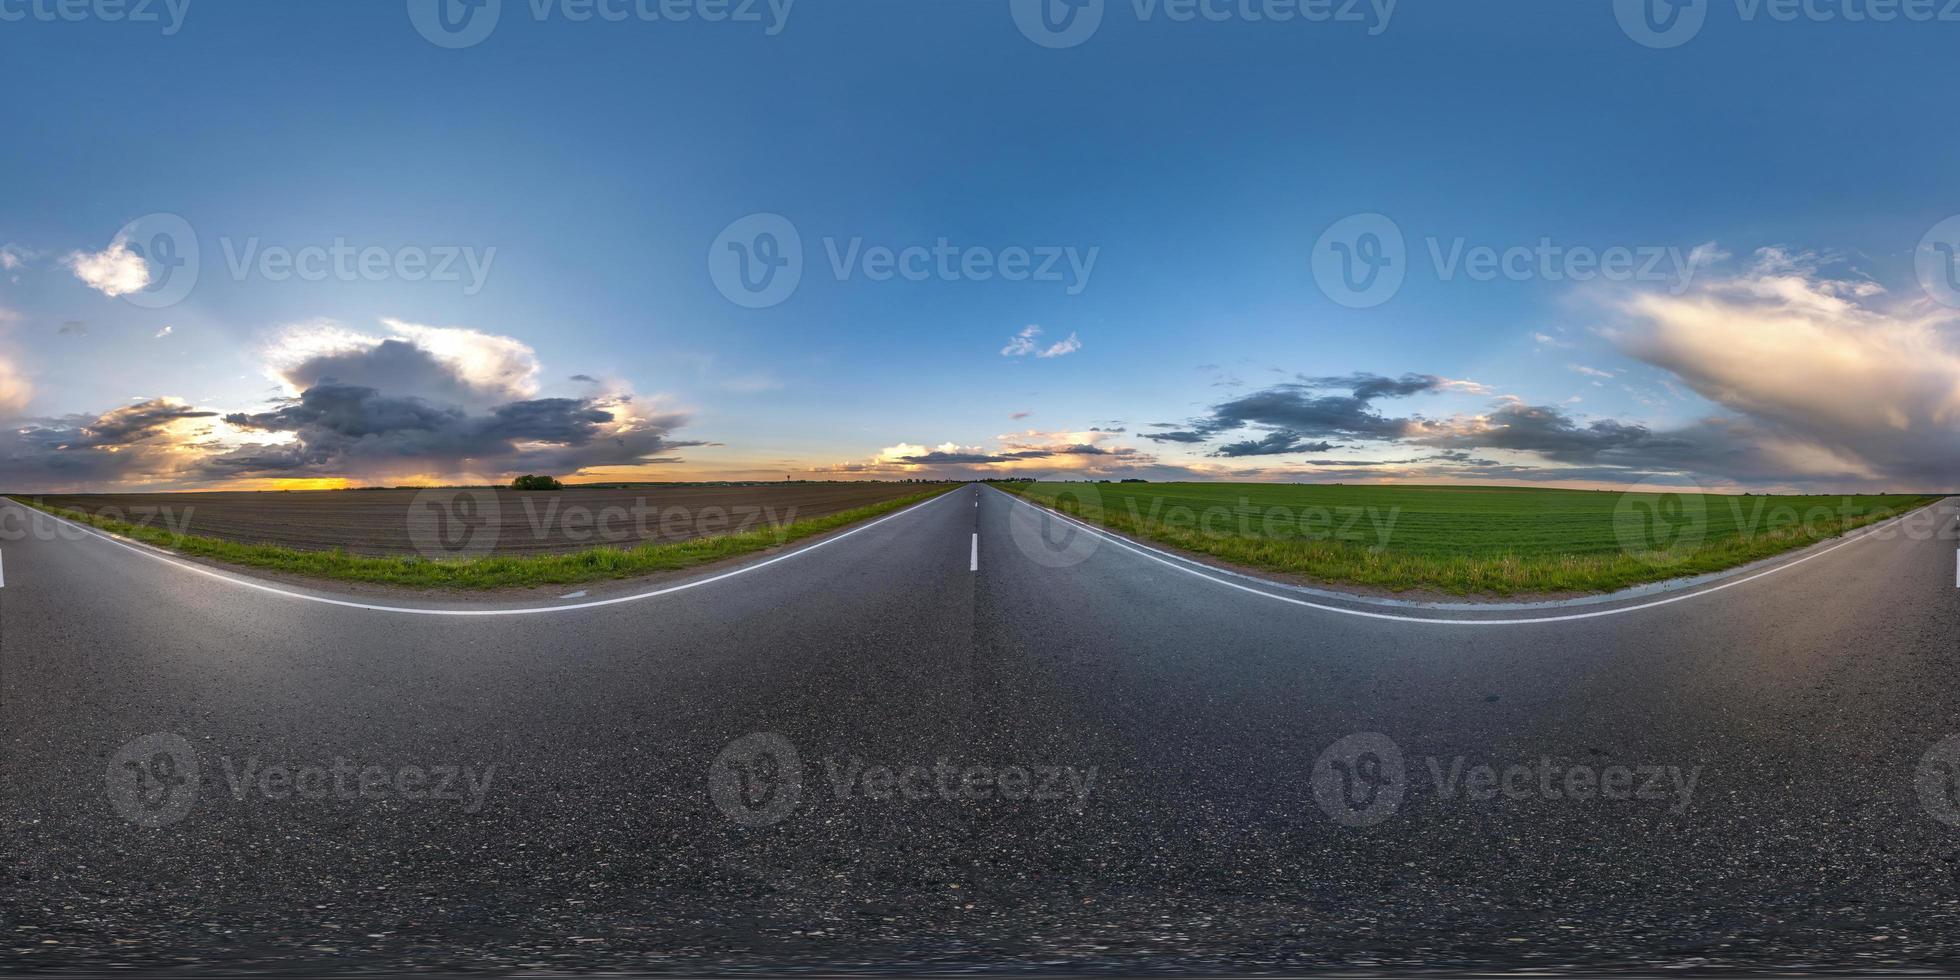 visão panorâmica hdri esférica completa em ângulo de 360 graus na estrada de asfalto molhada sem tráfego entre campos na noite após a tempestade com céu nublado em projeção equirretangular, conteúdo vr ar foto